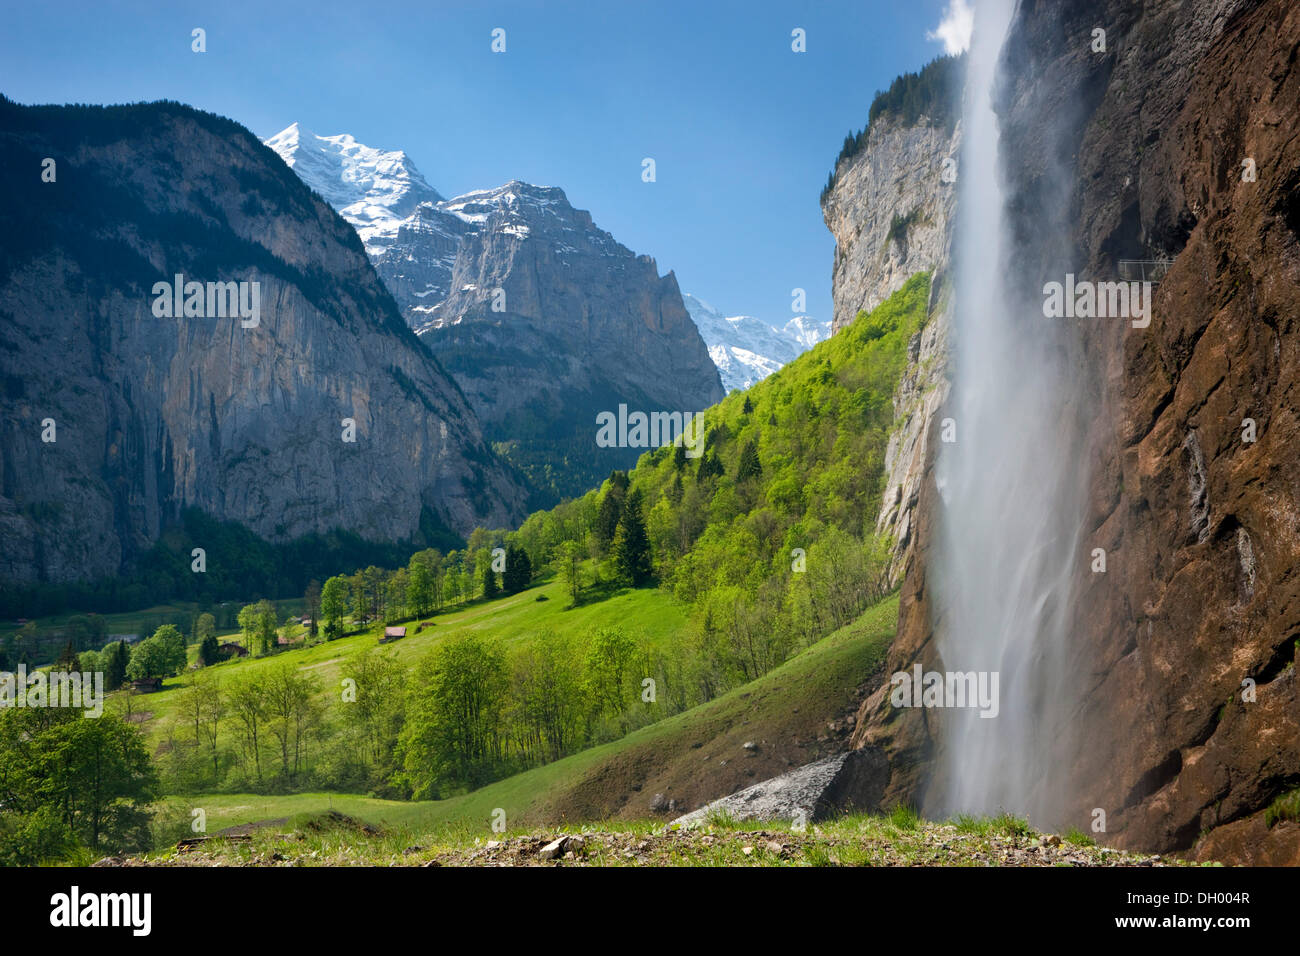 Staubbach Falls près de Lauterbrunnen avec une vue vers les Alpes Bernoises, Oberland Bernois, Suisse, Europe Banque D'Images